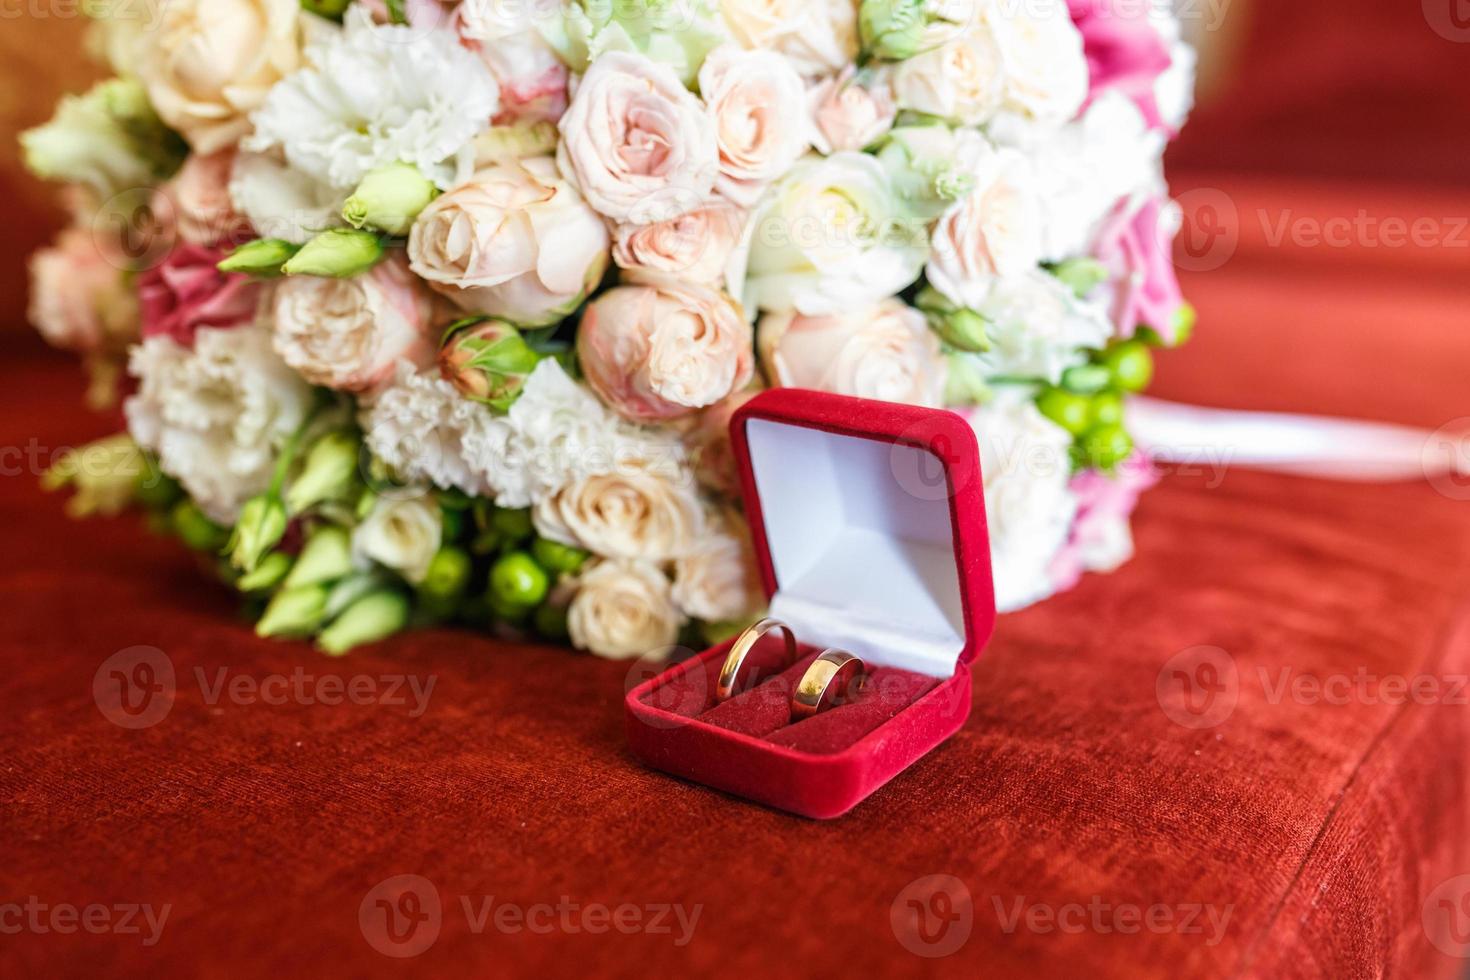 bouquet de mariage lumineux de roses roses blanches d'été avec des anneaux de mariage photo